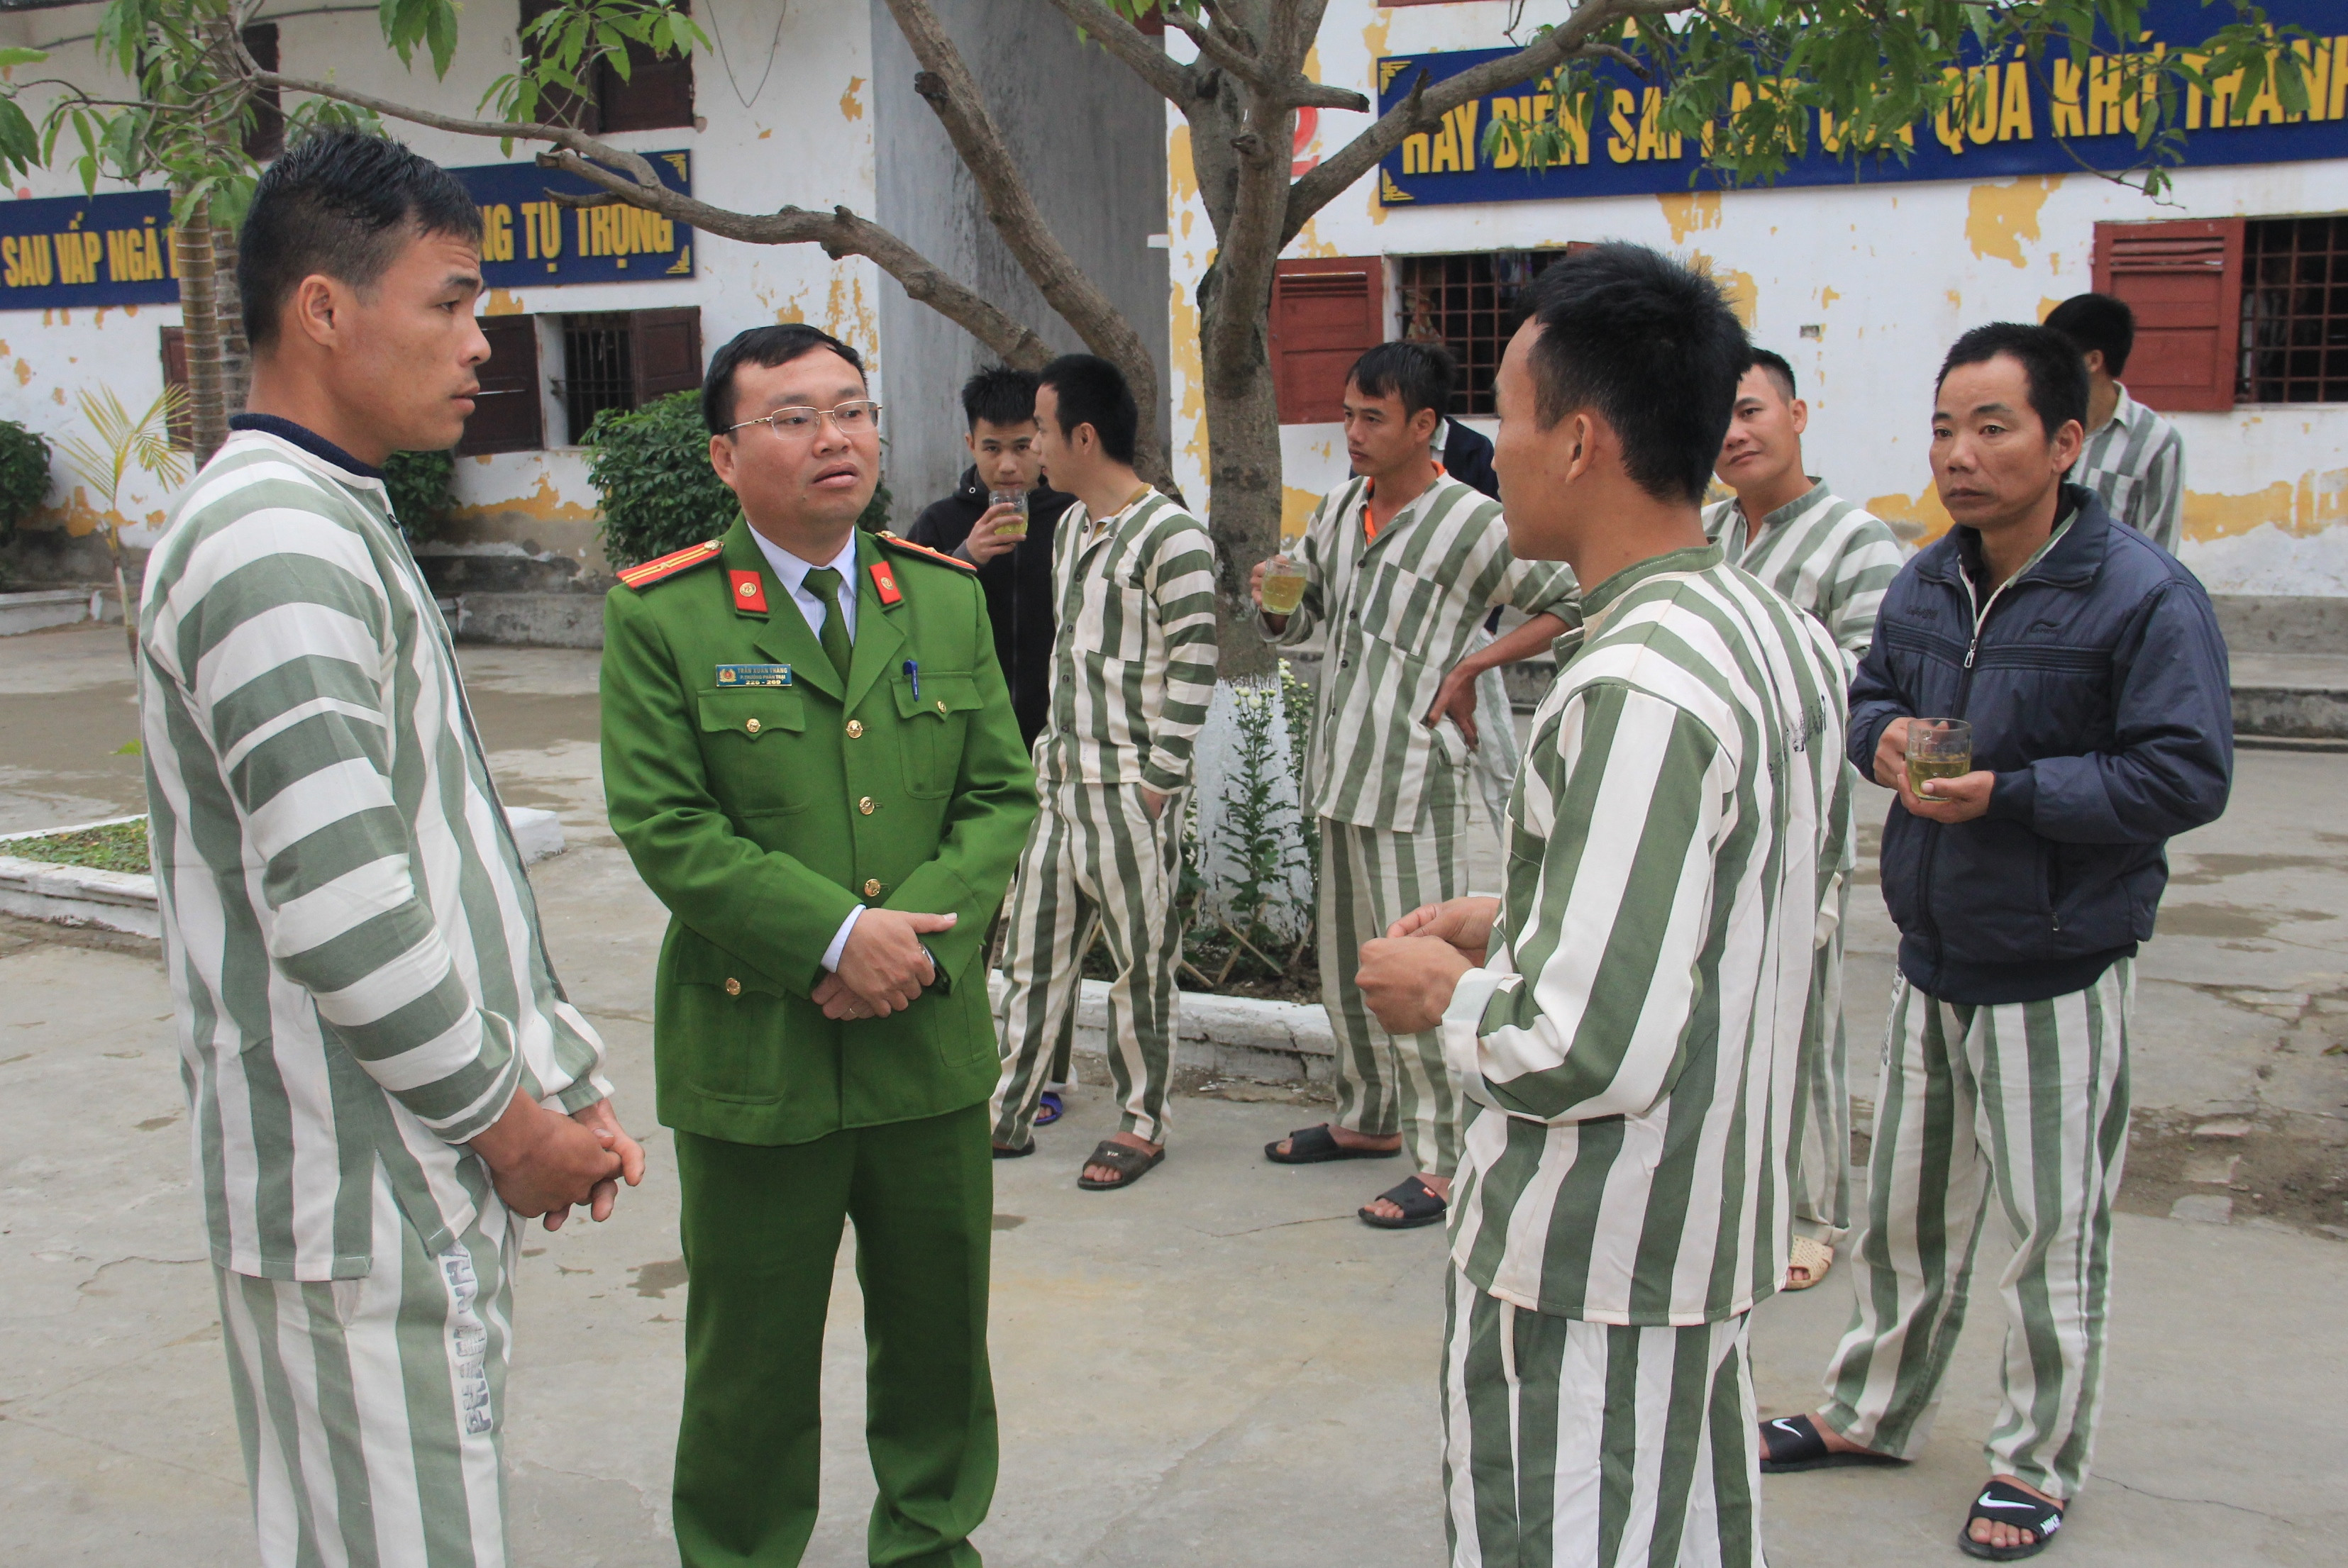 Sau khi ăn uống xong, các phạm nhân vui vẻ trò chuyện với cán bộ Trại tạm giam. Ảnh: Phạm Bằng